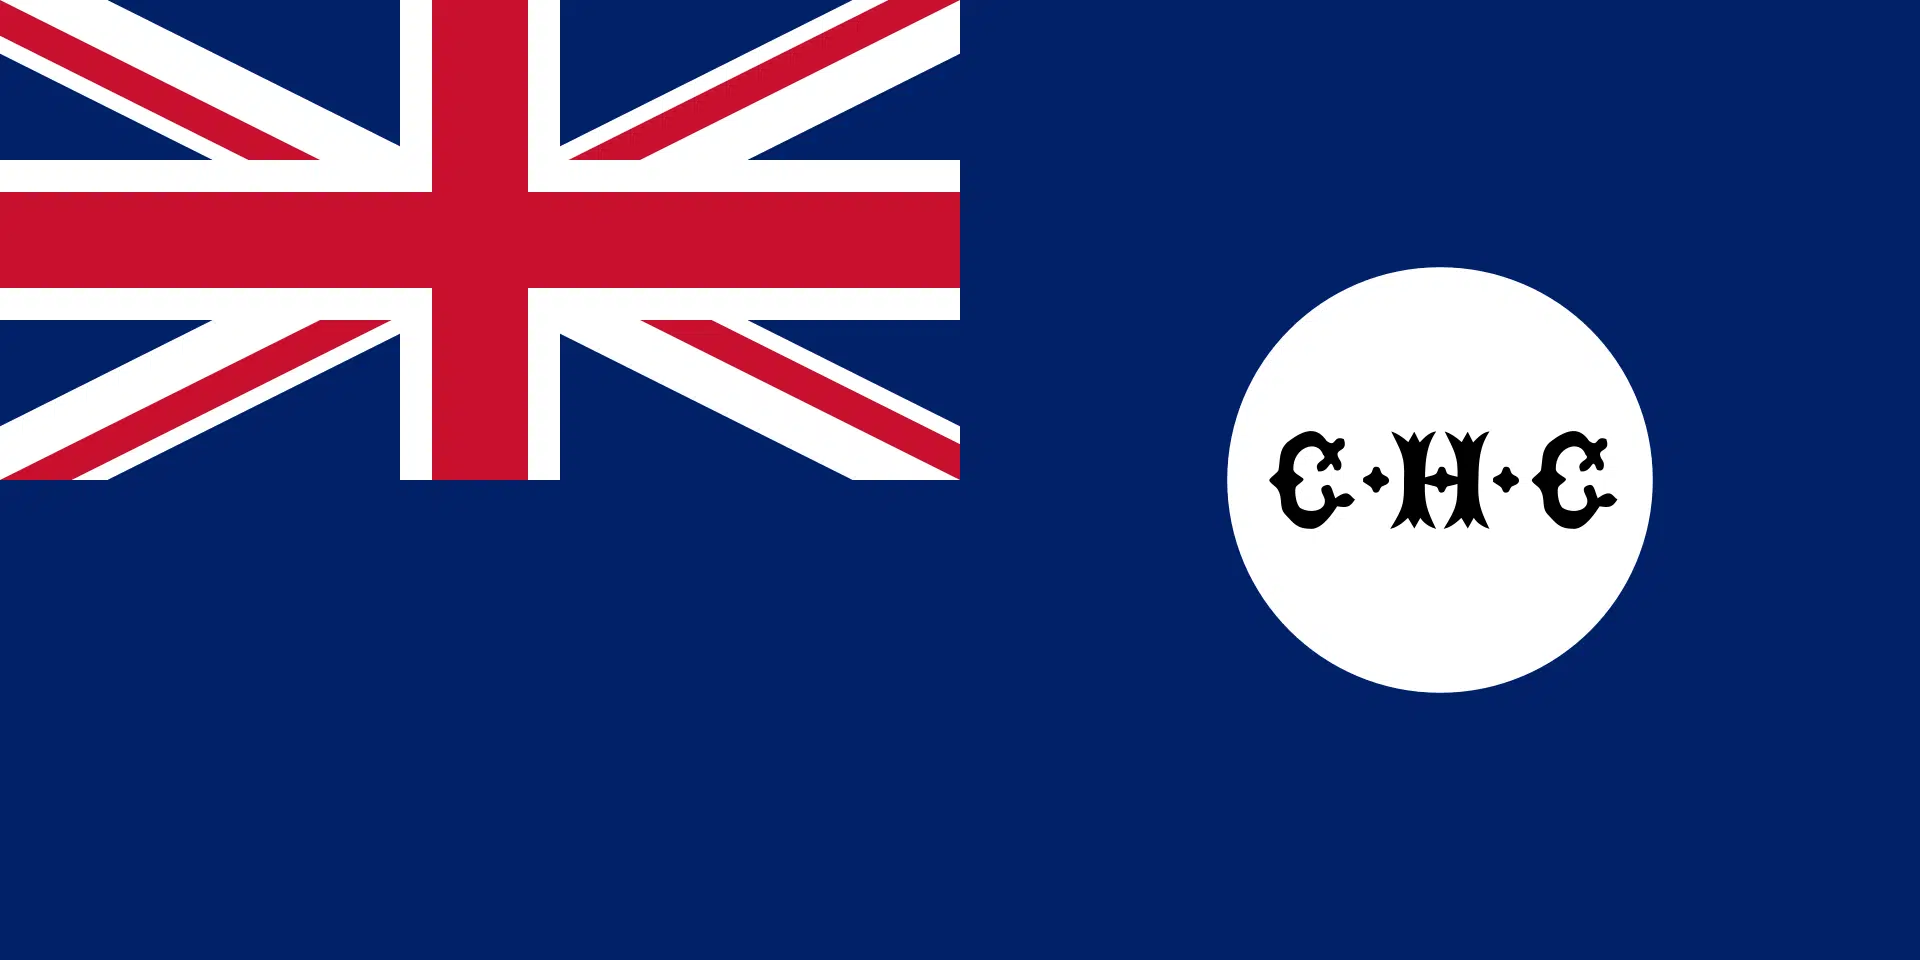 İngiliz hakimiyeti altındaki Kıbrıs bayrağı